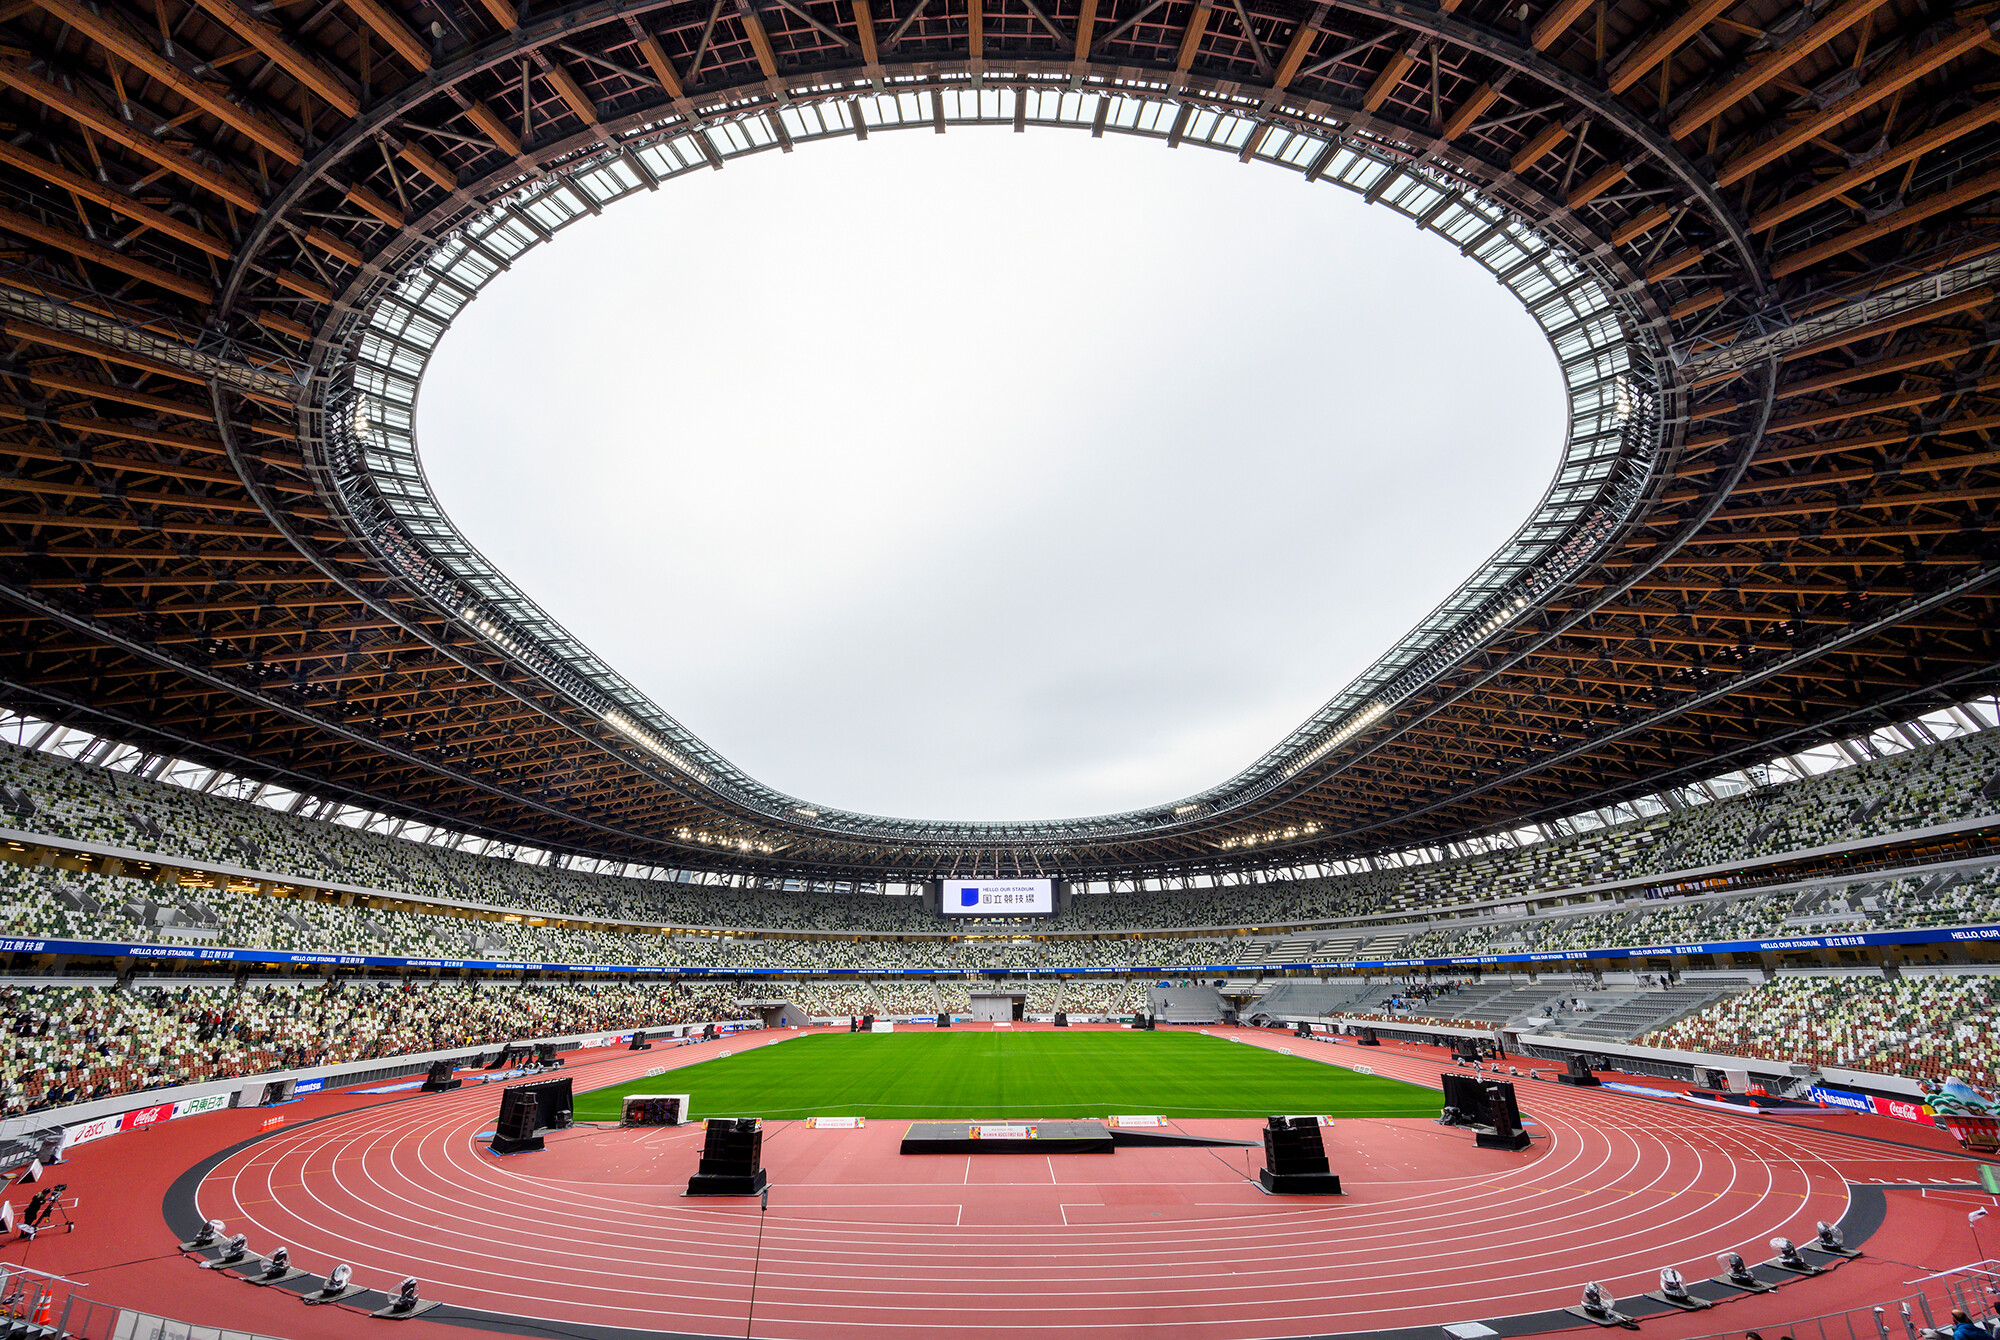 Image: The New National Stadium